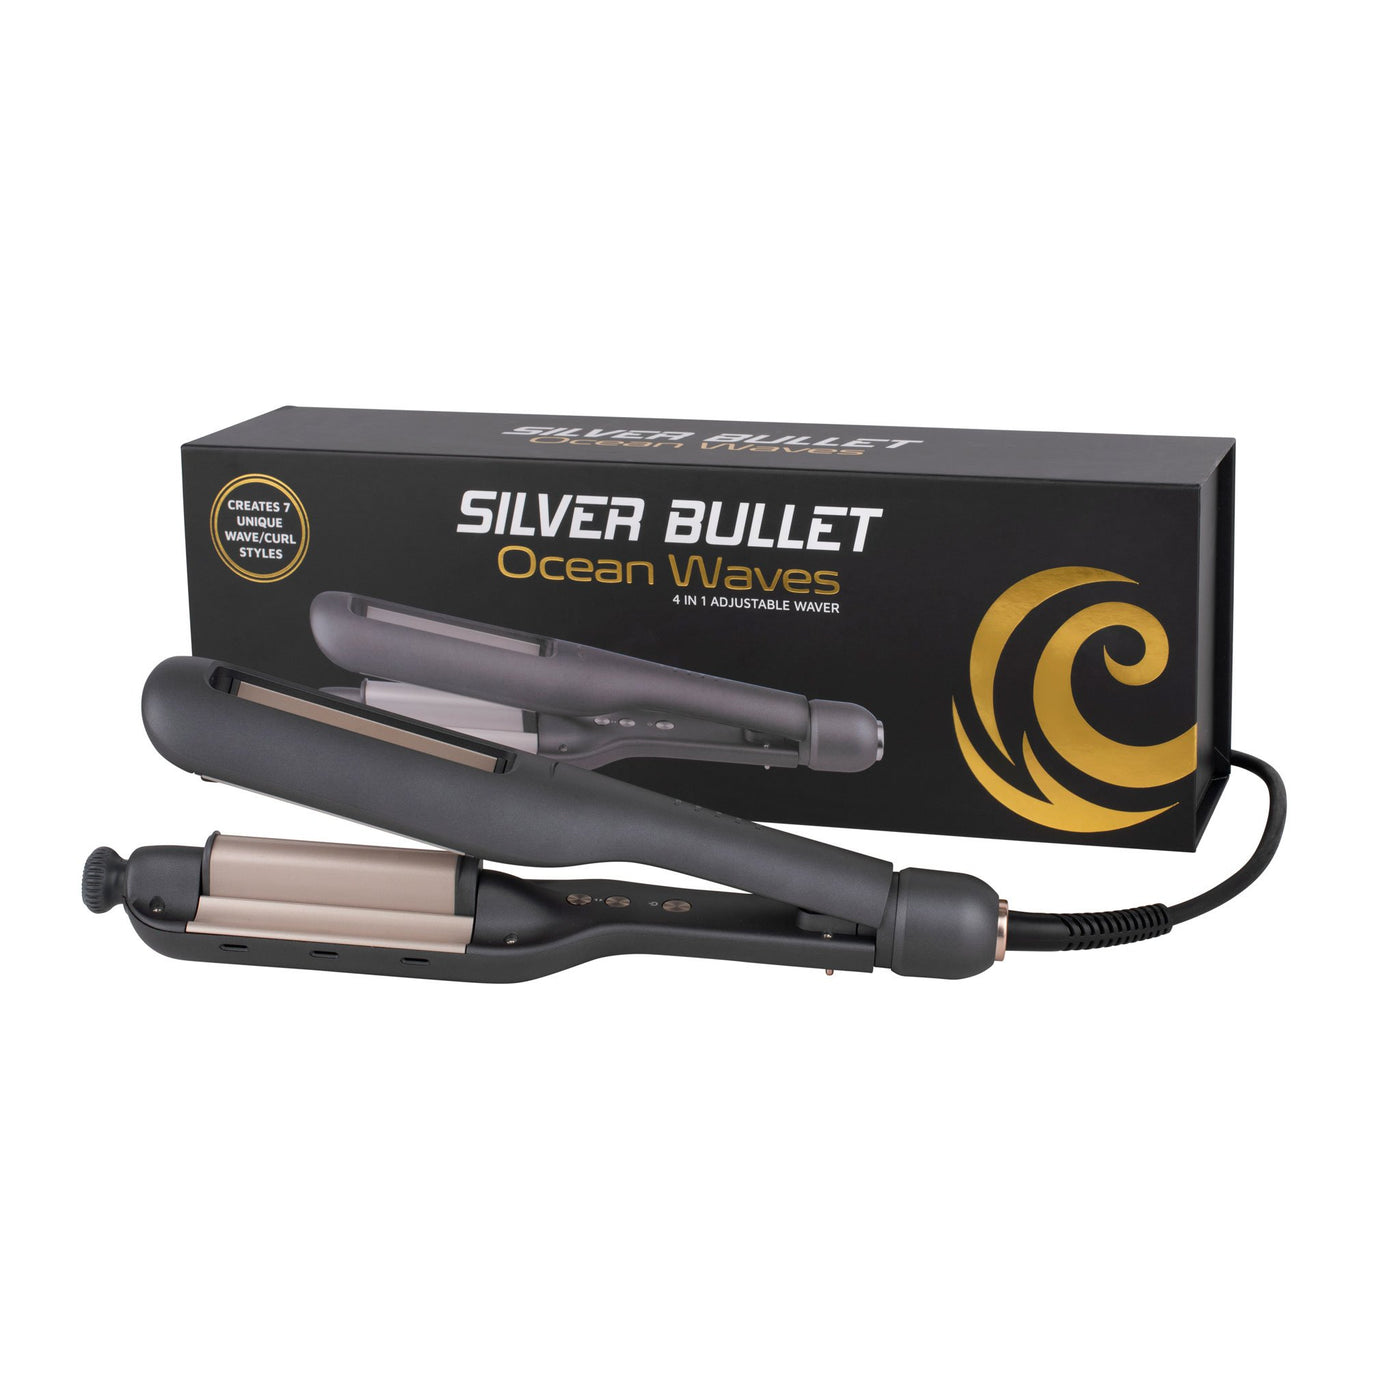 Silver Bullet Ocean Waves 4 In 1 Adjustable Deep Waver packaging